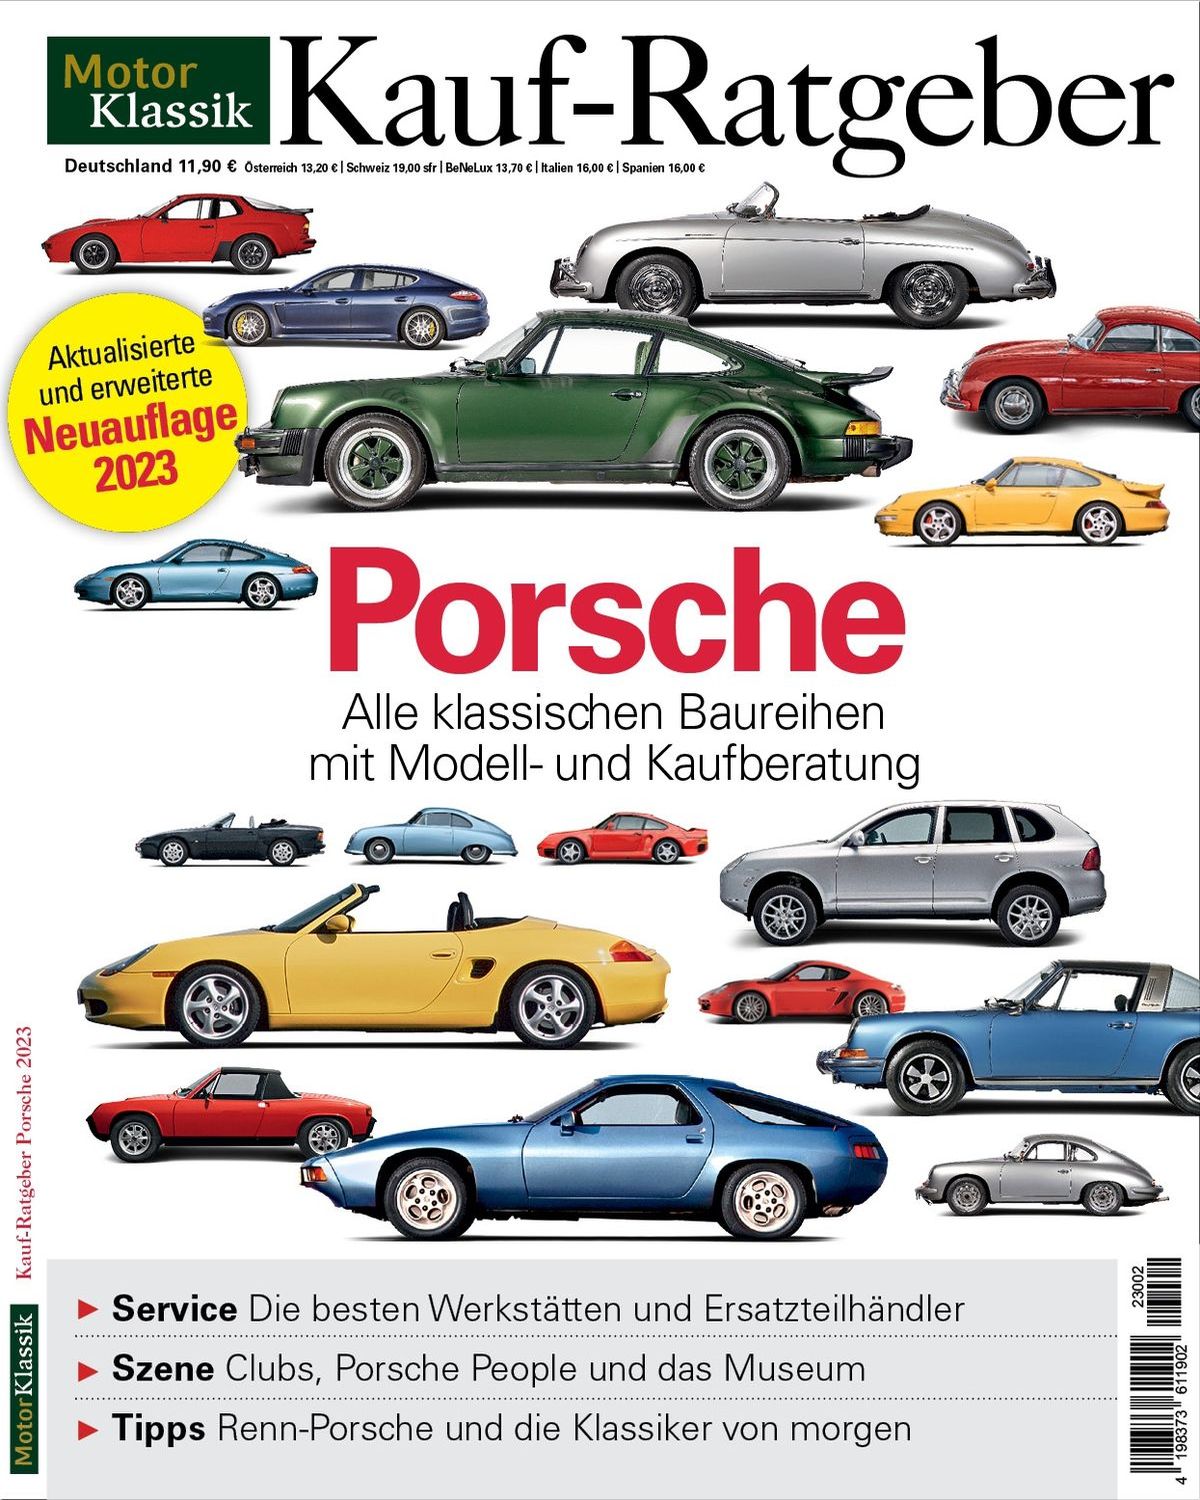 Foto: Der gedruckte Kauf-Ratgeber für klassische Porsche.